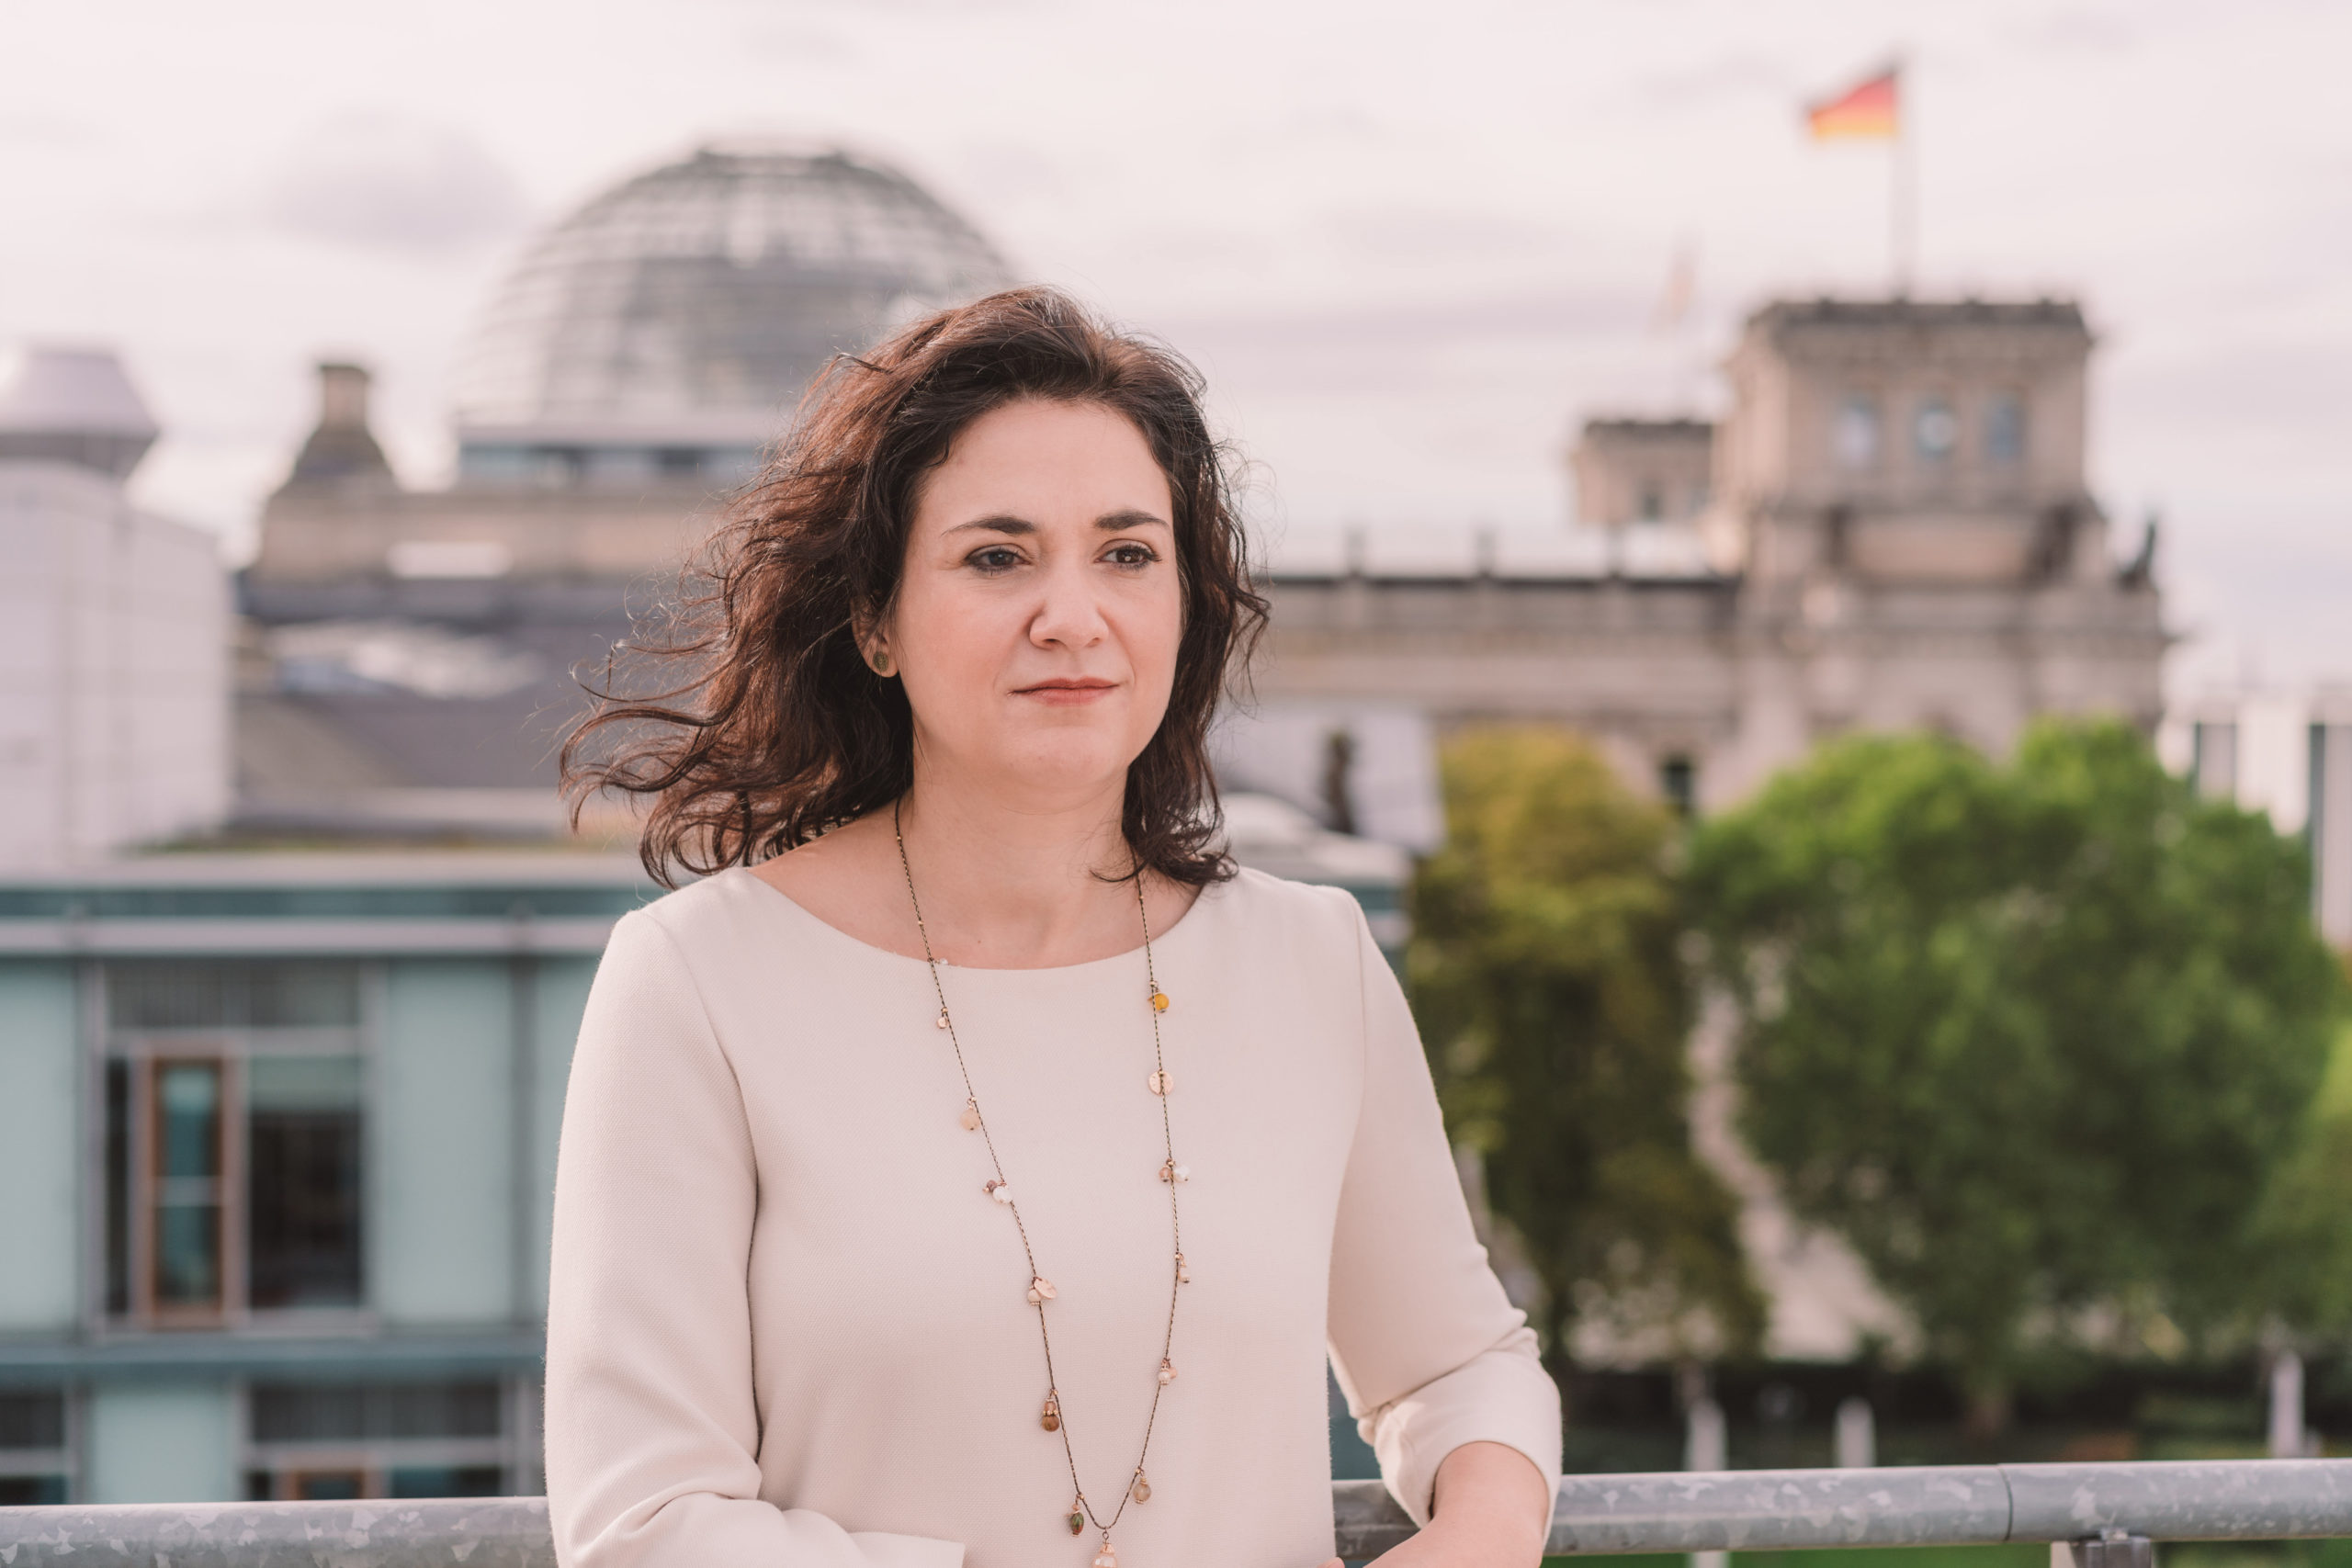 Mitgliederbrief zum Verzicht auf erneute Kandidatur für den SPD-Landesvorstand Bremen